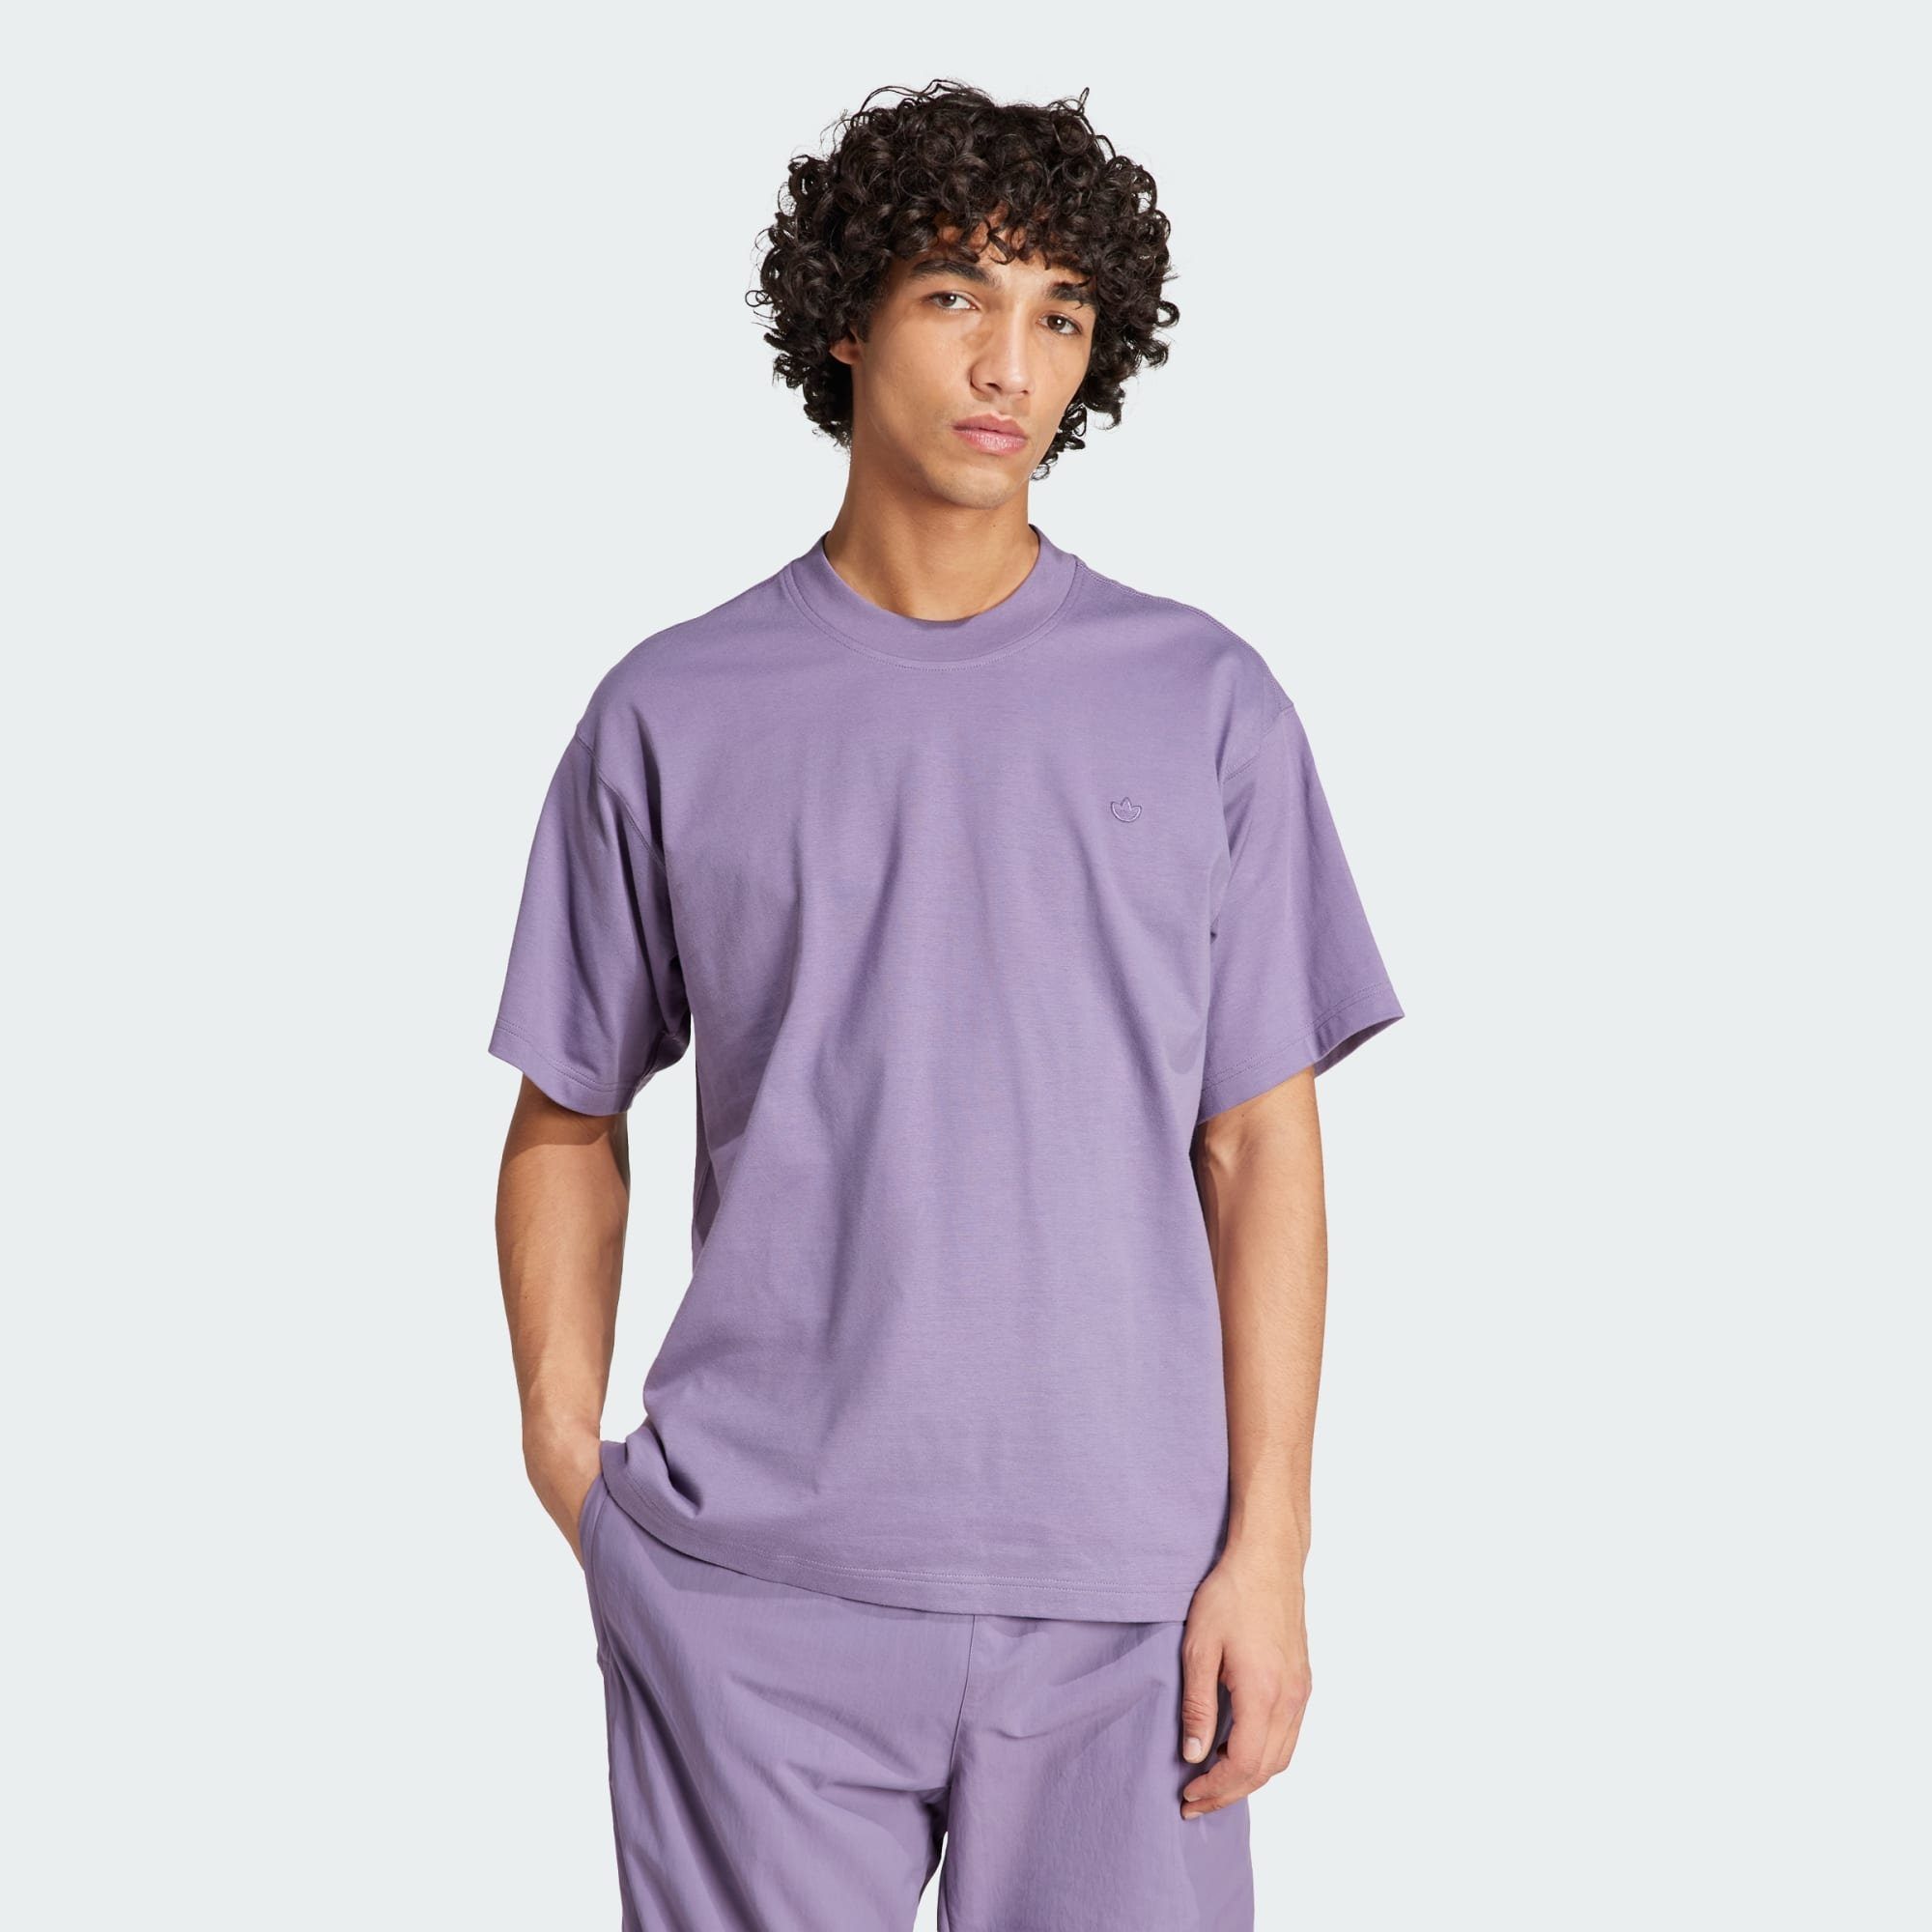 adidas Originals T-Shirt Violet Shadow CONTEMPO T-SHIRT ADICOLOR